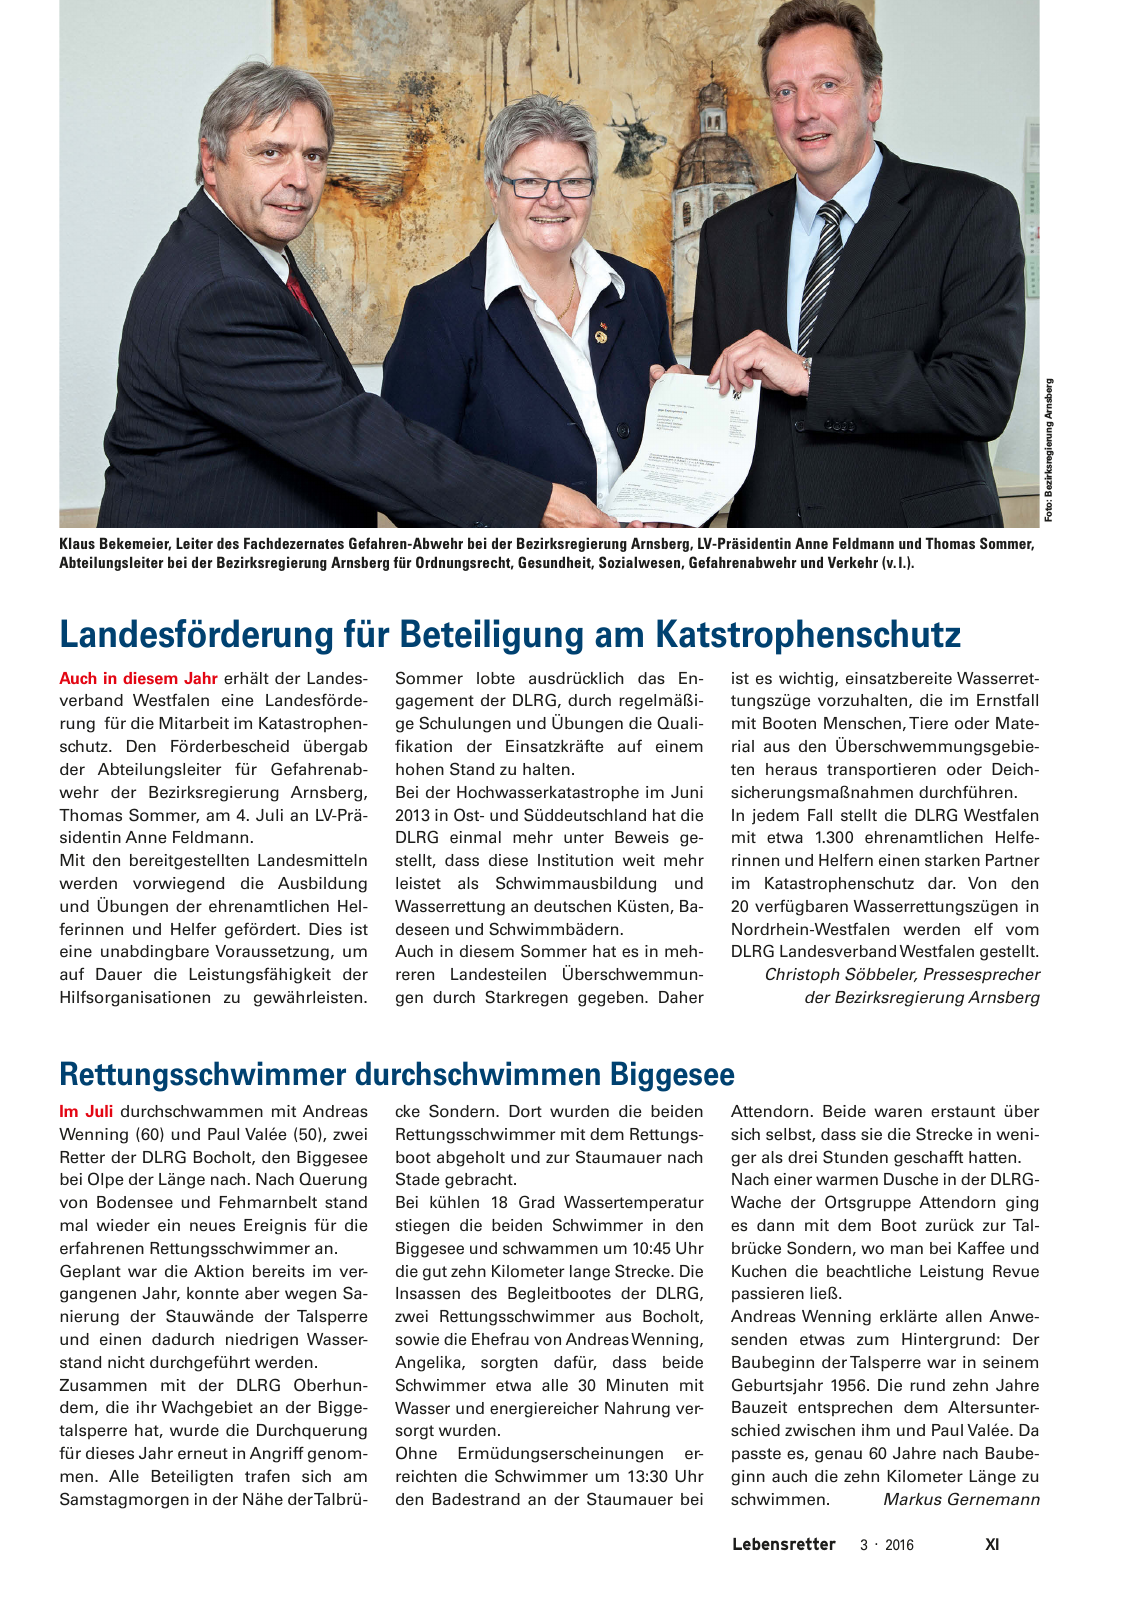 Vorschau Lebensretter 3/2016 - Regionalausgabe Westfalen Seite 13